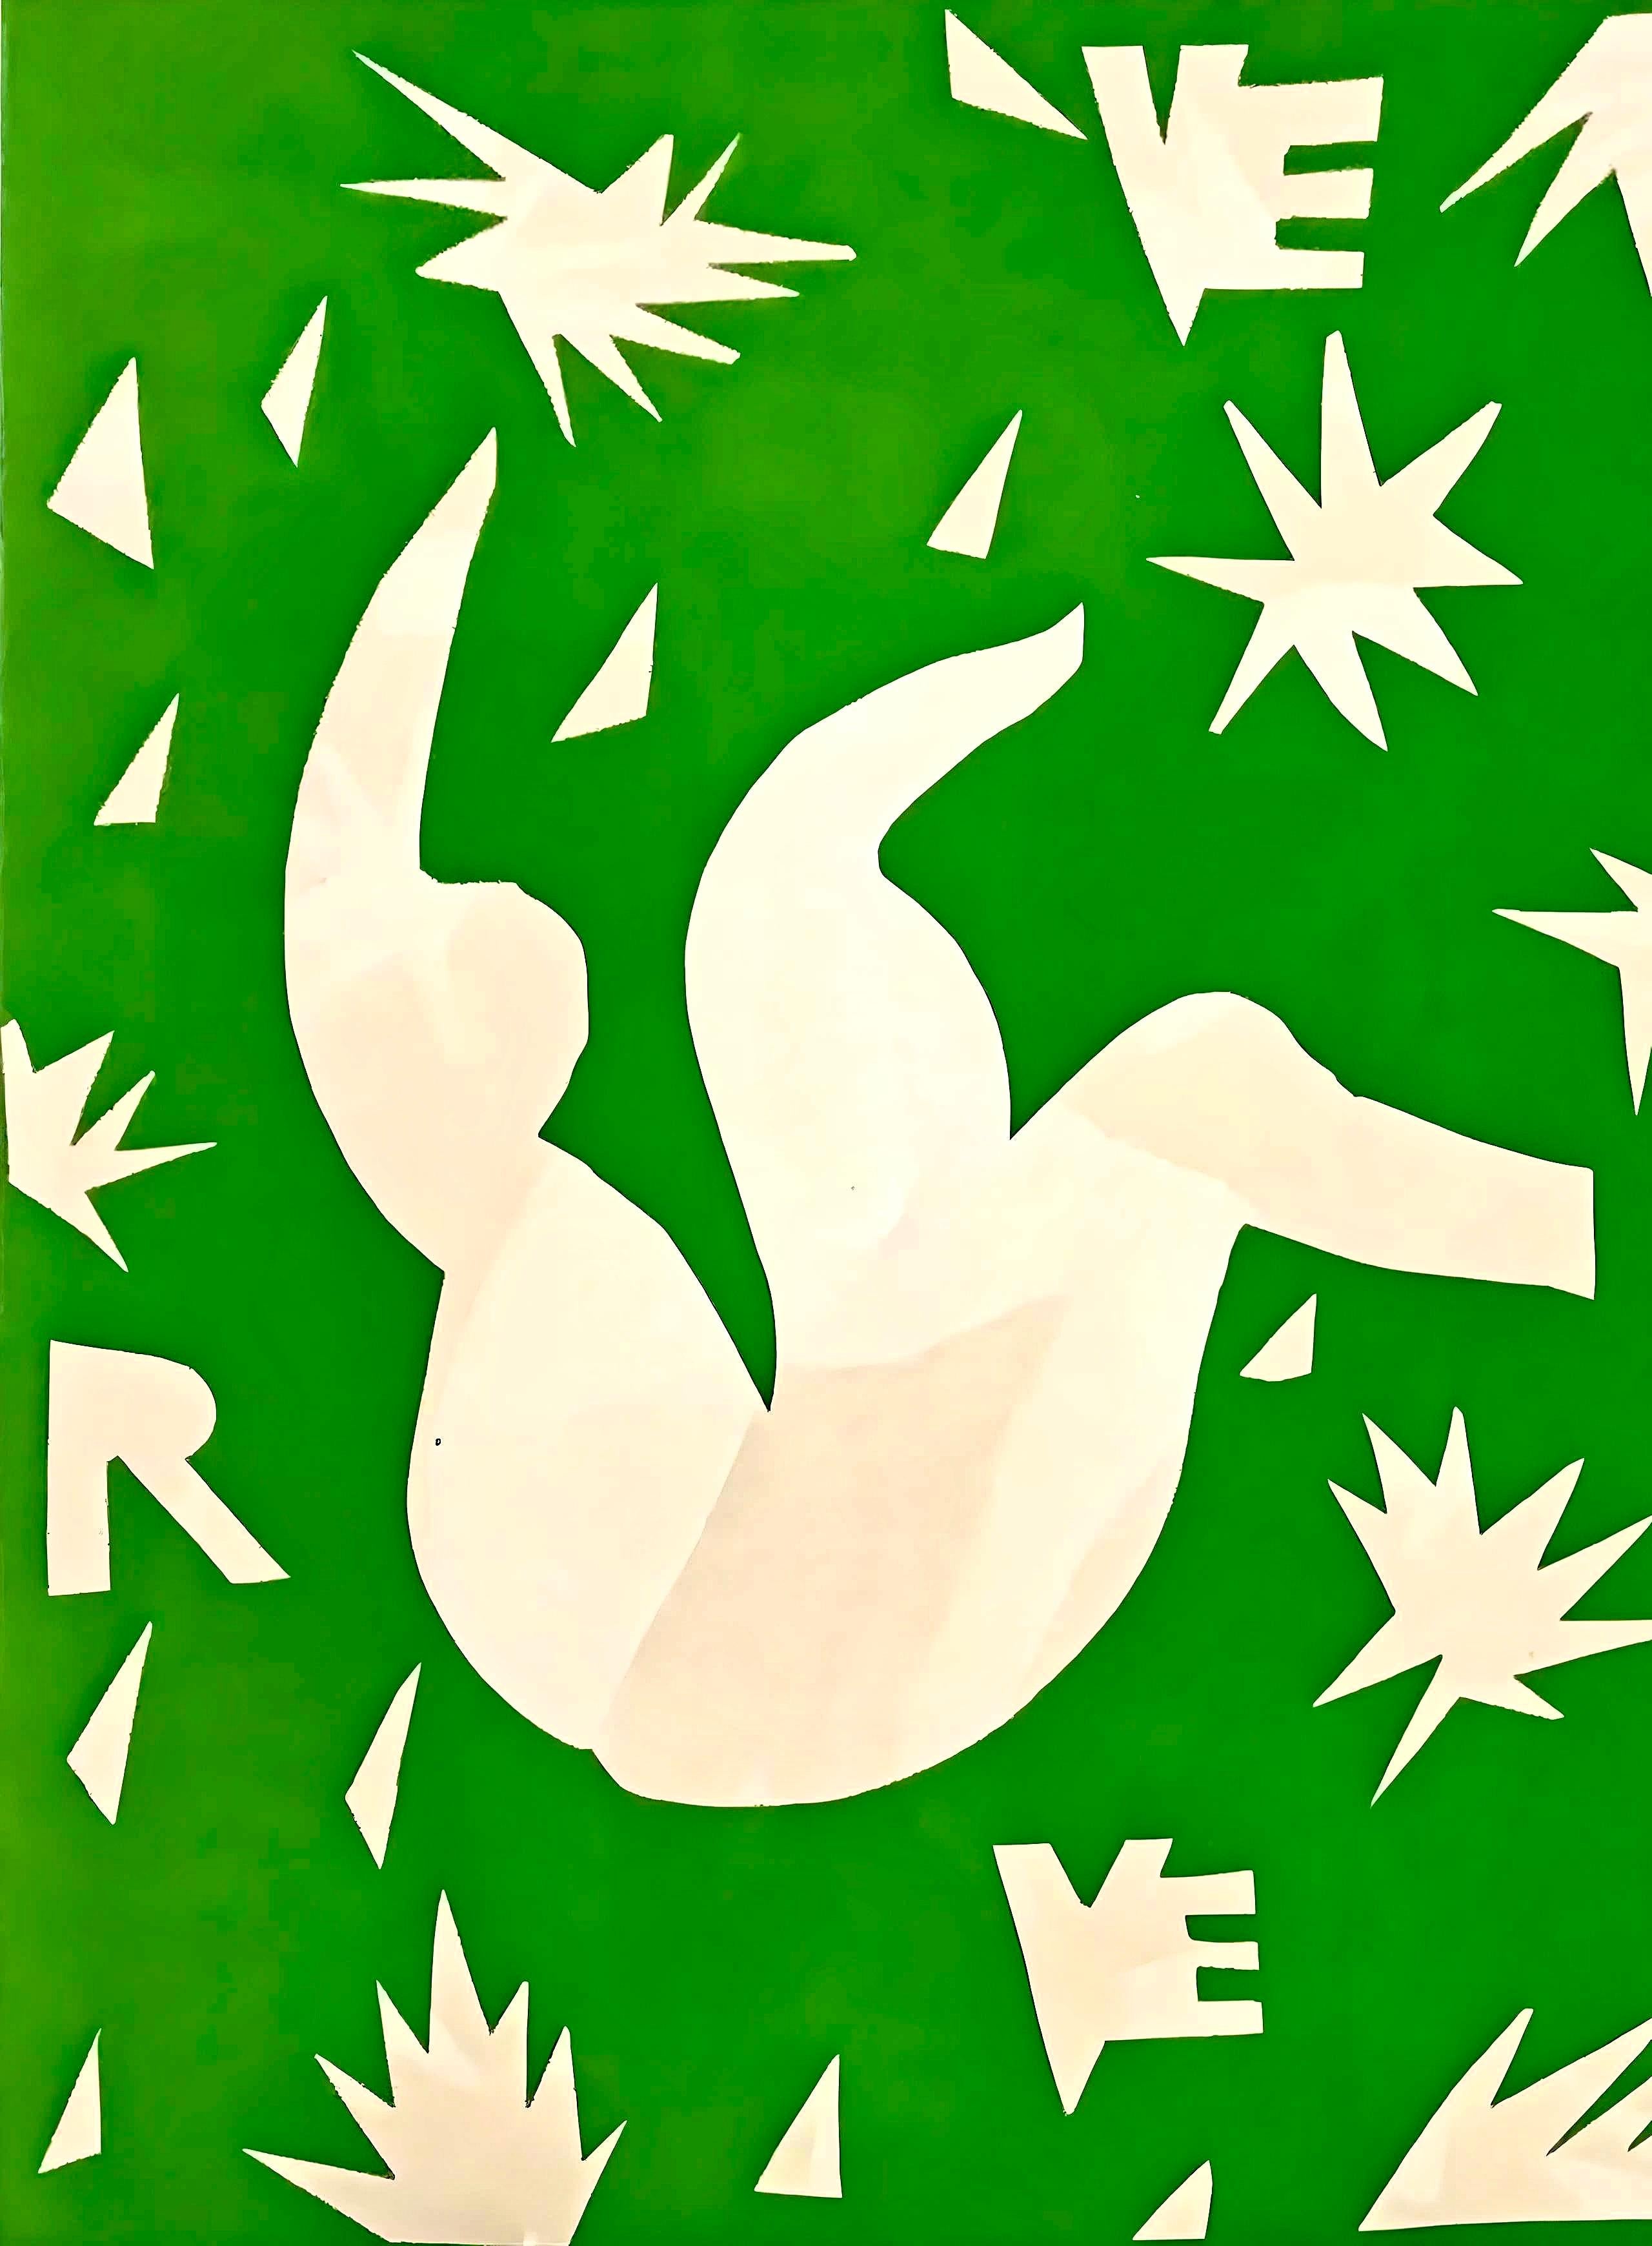 Matisse, Couverture, Verve: Revue Artistique et Littéraire (after) - Modern Print by Henri Matisse